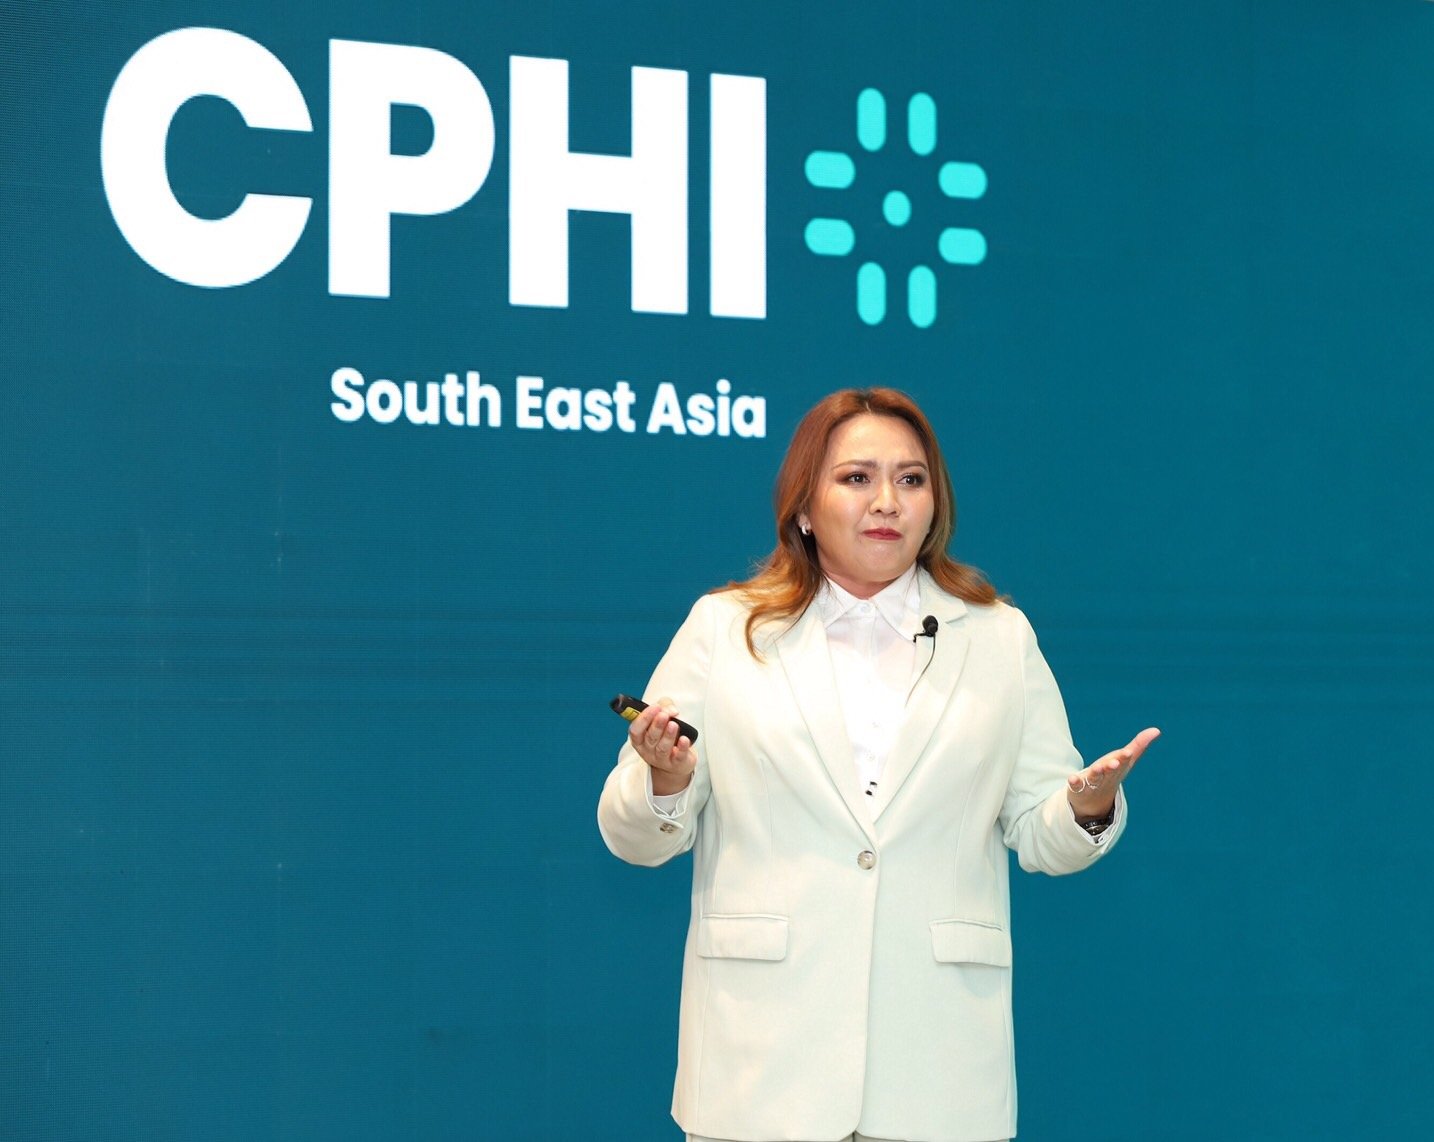 CPHI South East Asia 2023’ เร่งเครื่องอุตสาหกรรมยาไทย สู่ศูนย์กลางทางการแพทย์และสุขภาพ ผลักดันความมั่นคงทางการยาขับเคลื่อนเศรษฐกิจไทย